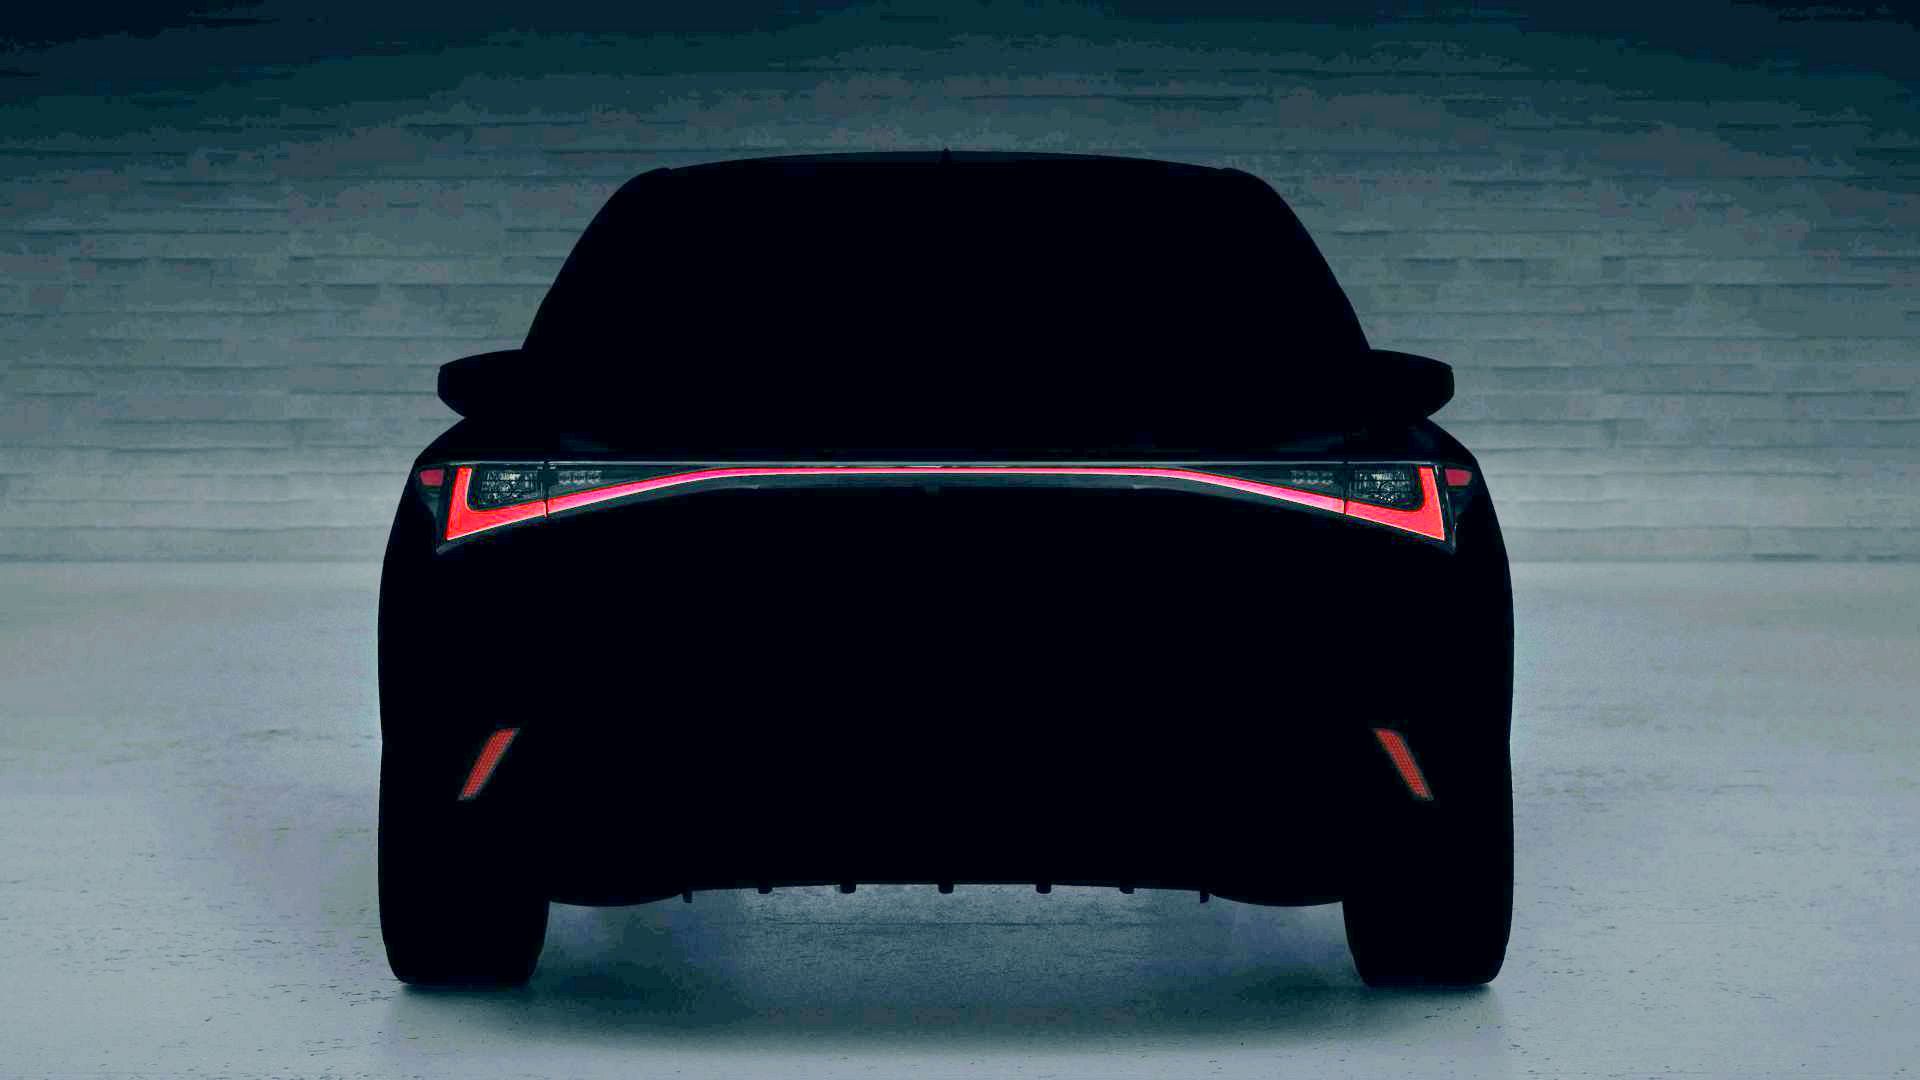 All-new Lexus IS 2021 กับภาพทีเซอร์ที่เผยแค่บั้นท้าย ก่อนเปิดตัวจริง 9 มิ.ย.นี้